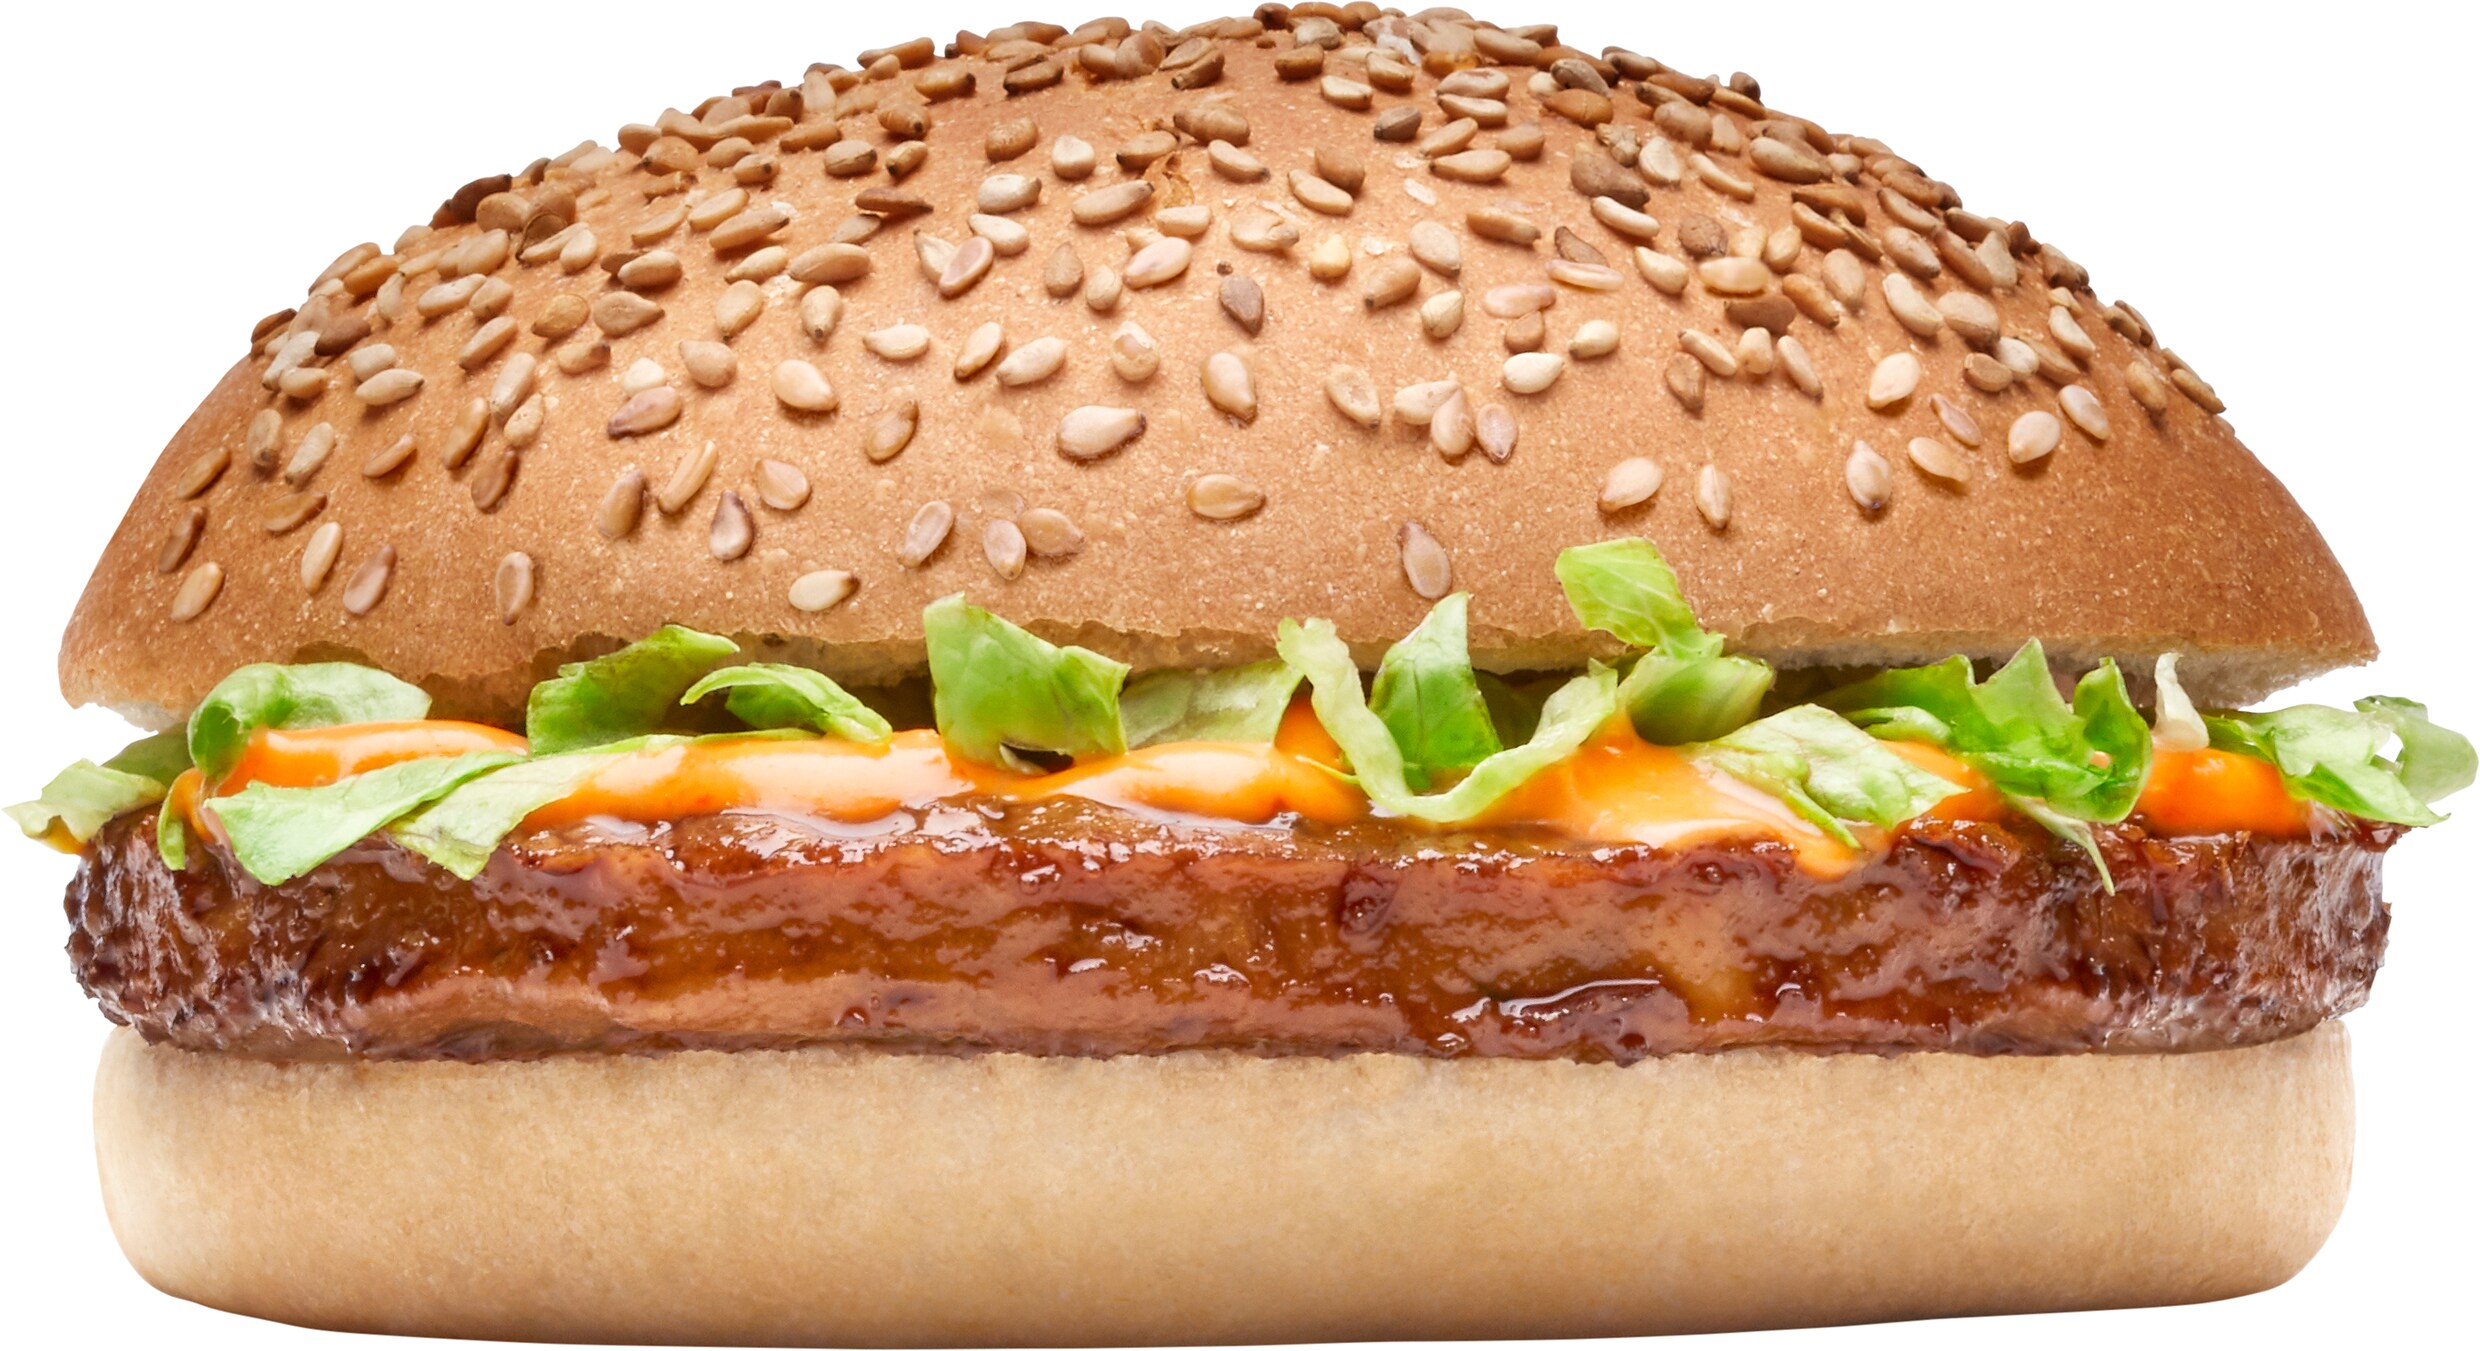 Consumentenbond: ‘Vegaburgers zijn veel te zout’